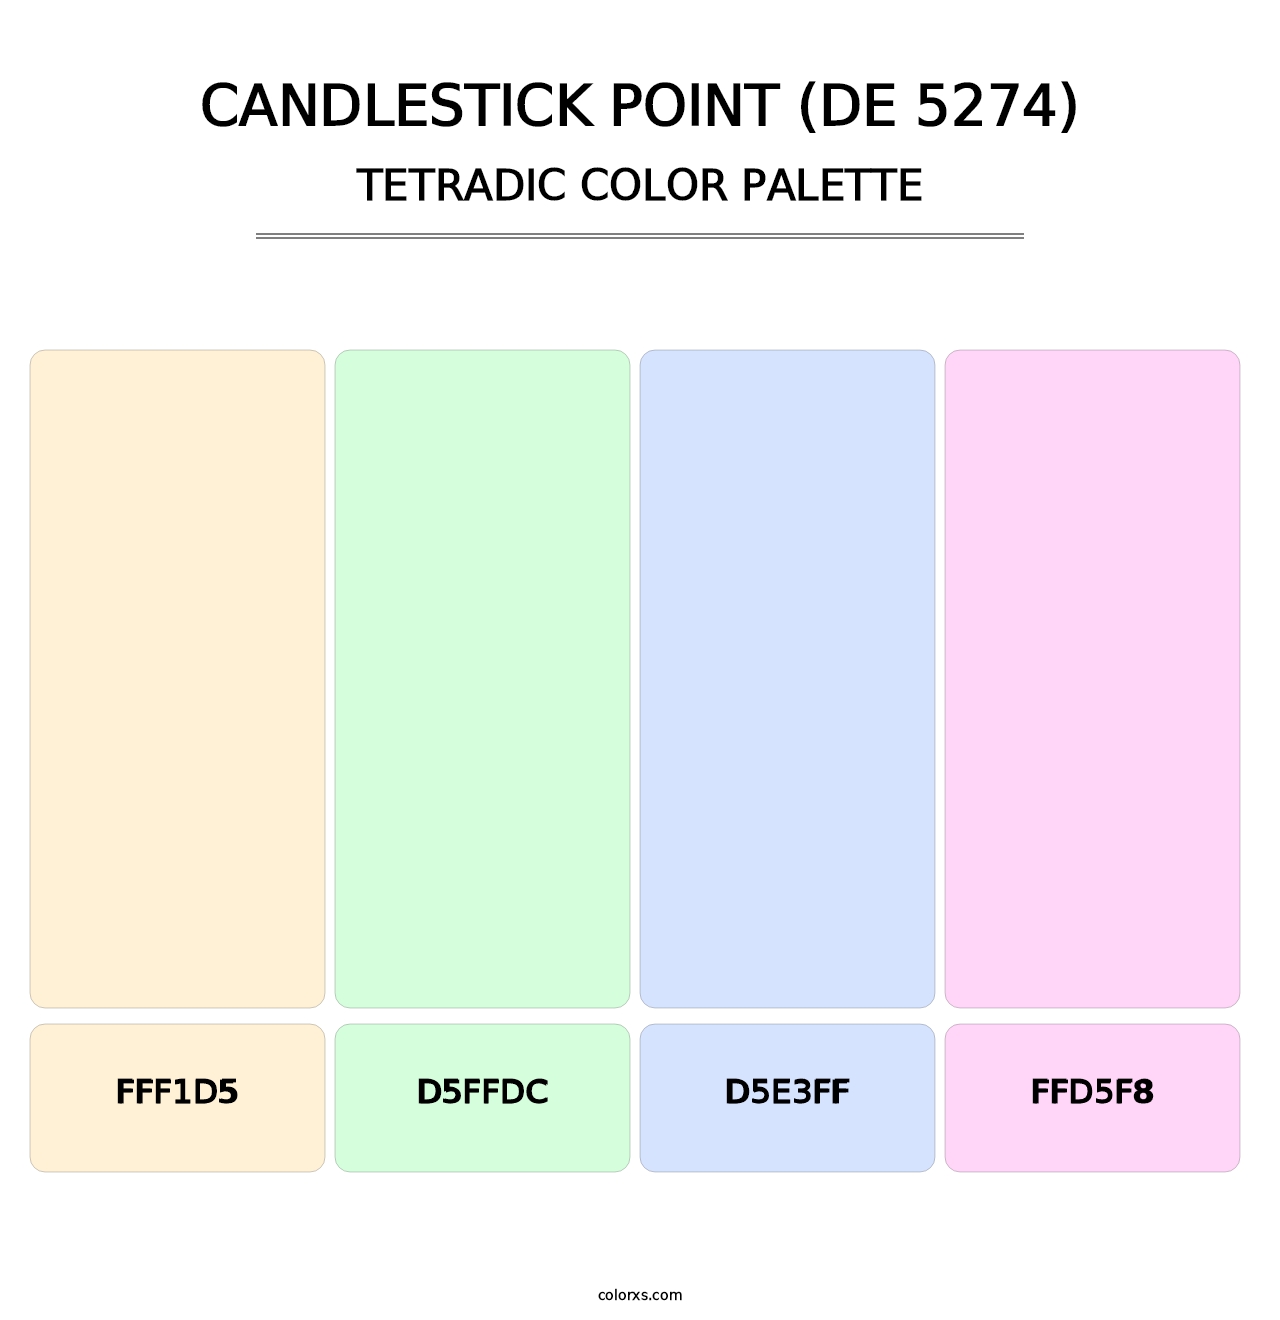 Candlestick Point (DE 5274) - Tetradic Color Palette